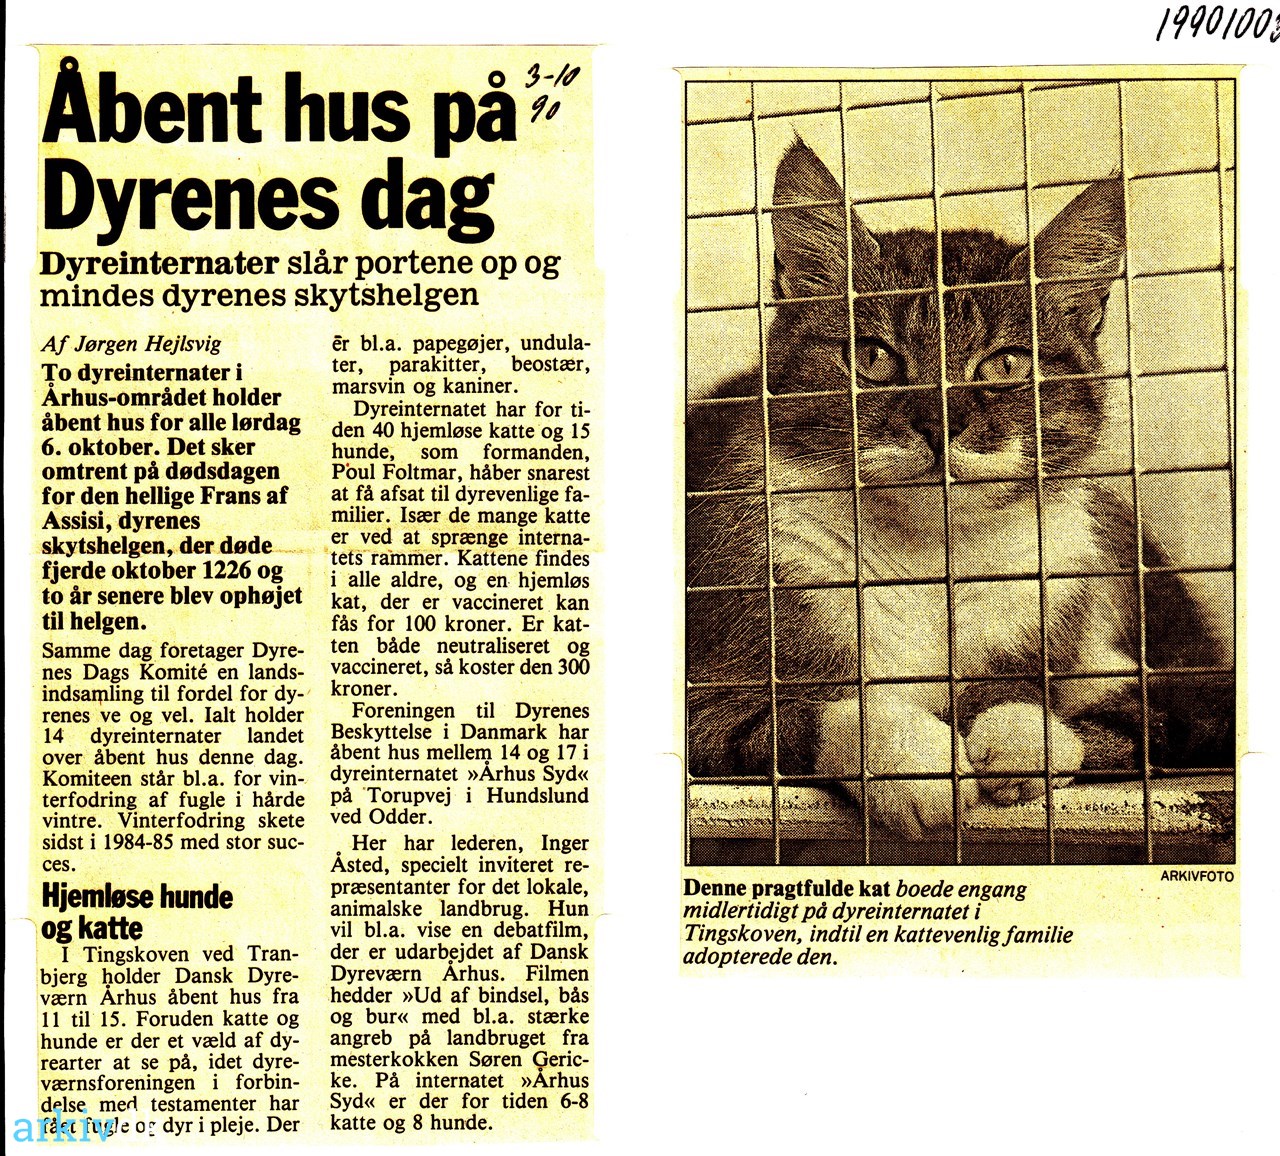 To grader Når som helst sektor arkiv.dk | Åbent hus på "Dyrenes dag" 1990. Dyreinternater slår portene op  og mindes dyrenes skytshelgen